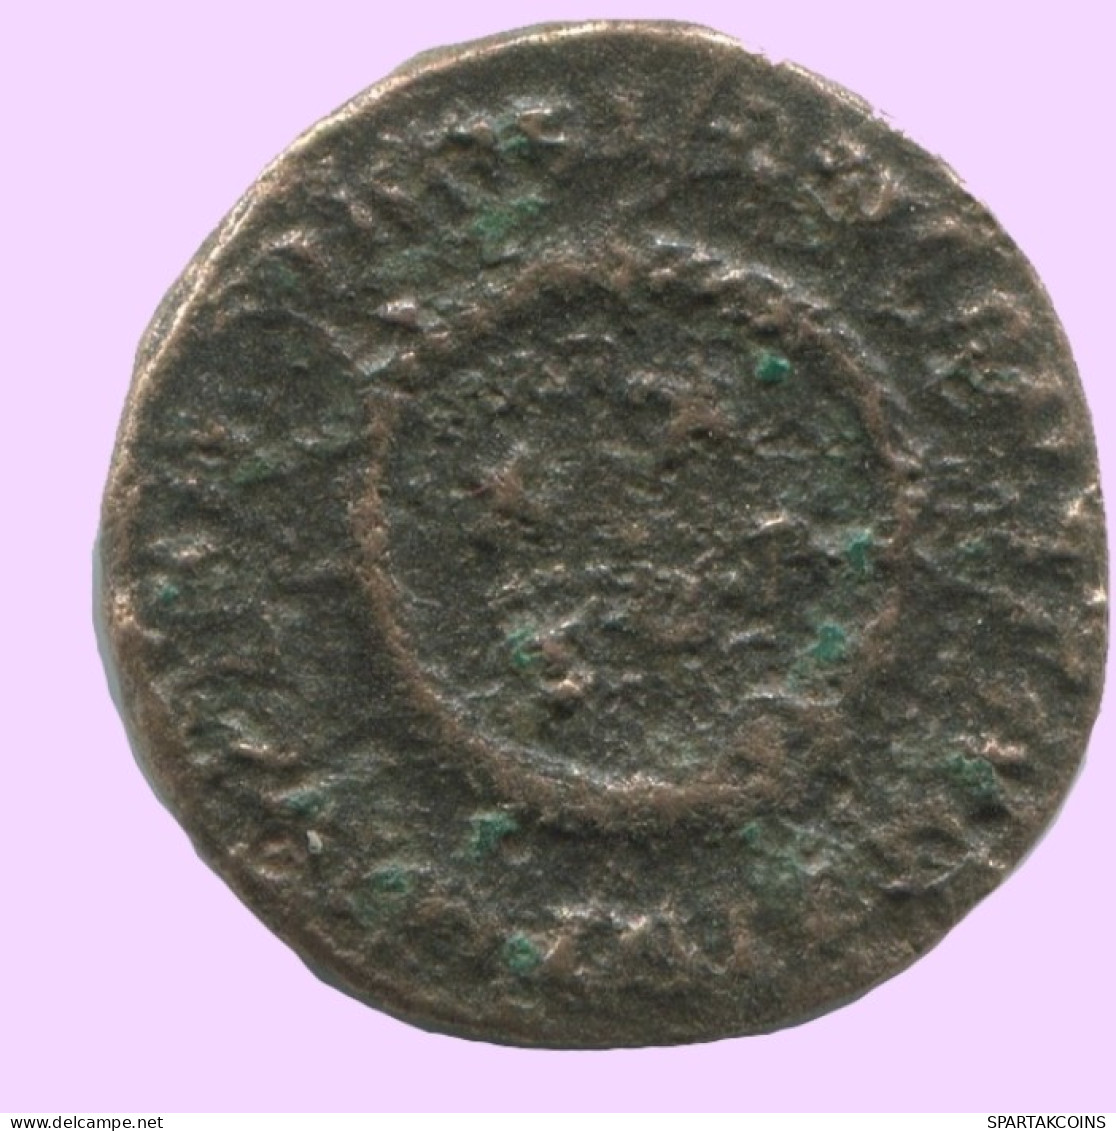 FOLLIS Antike Spätrömische Münze RÖMISCHE Münze 2.5g/18mm #ANT2004.7.D.A - Der Spätrömanischen Reich (363 / 476)